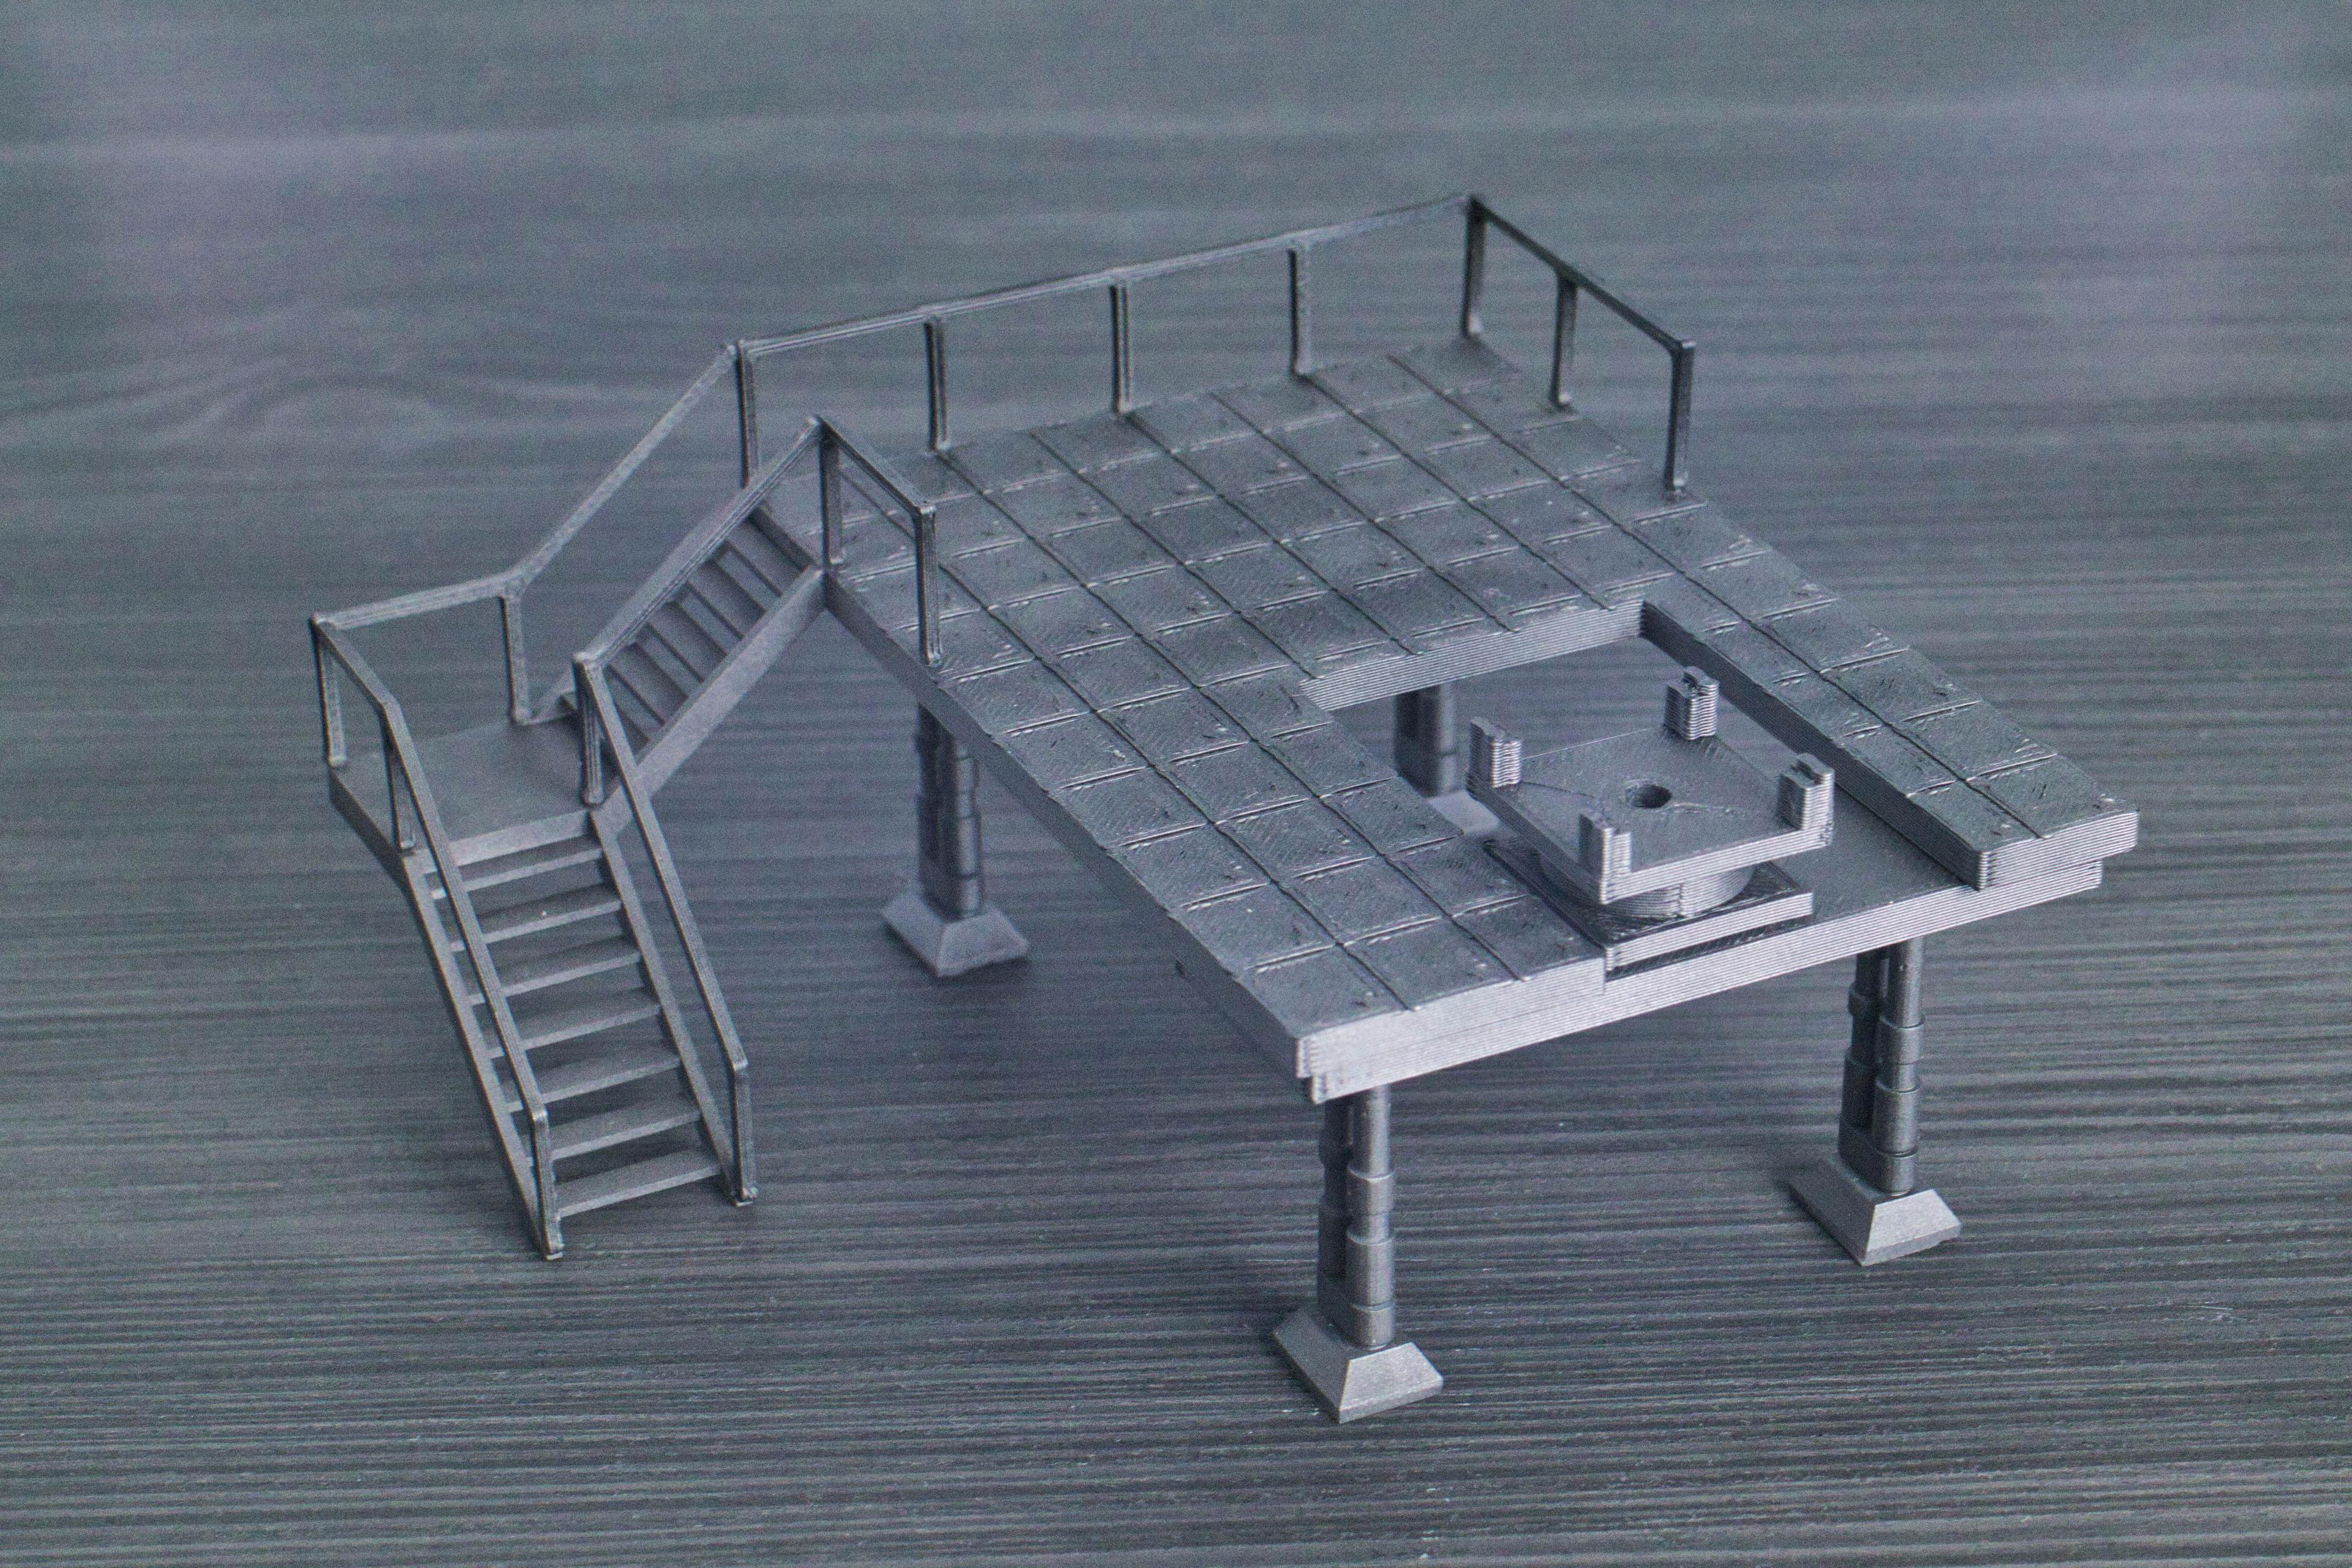 TIE Hangar Stand 3d model